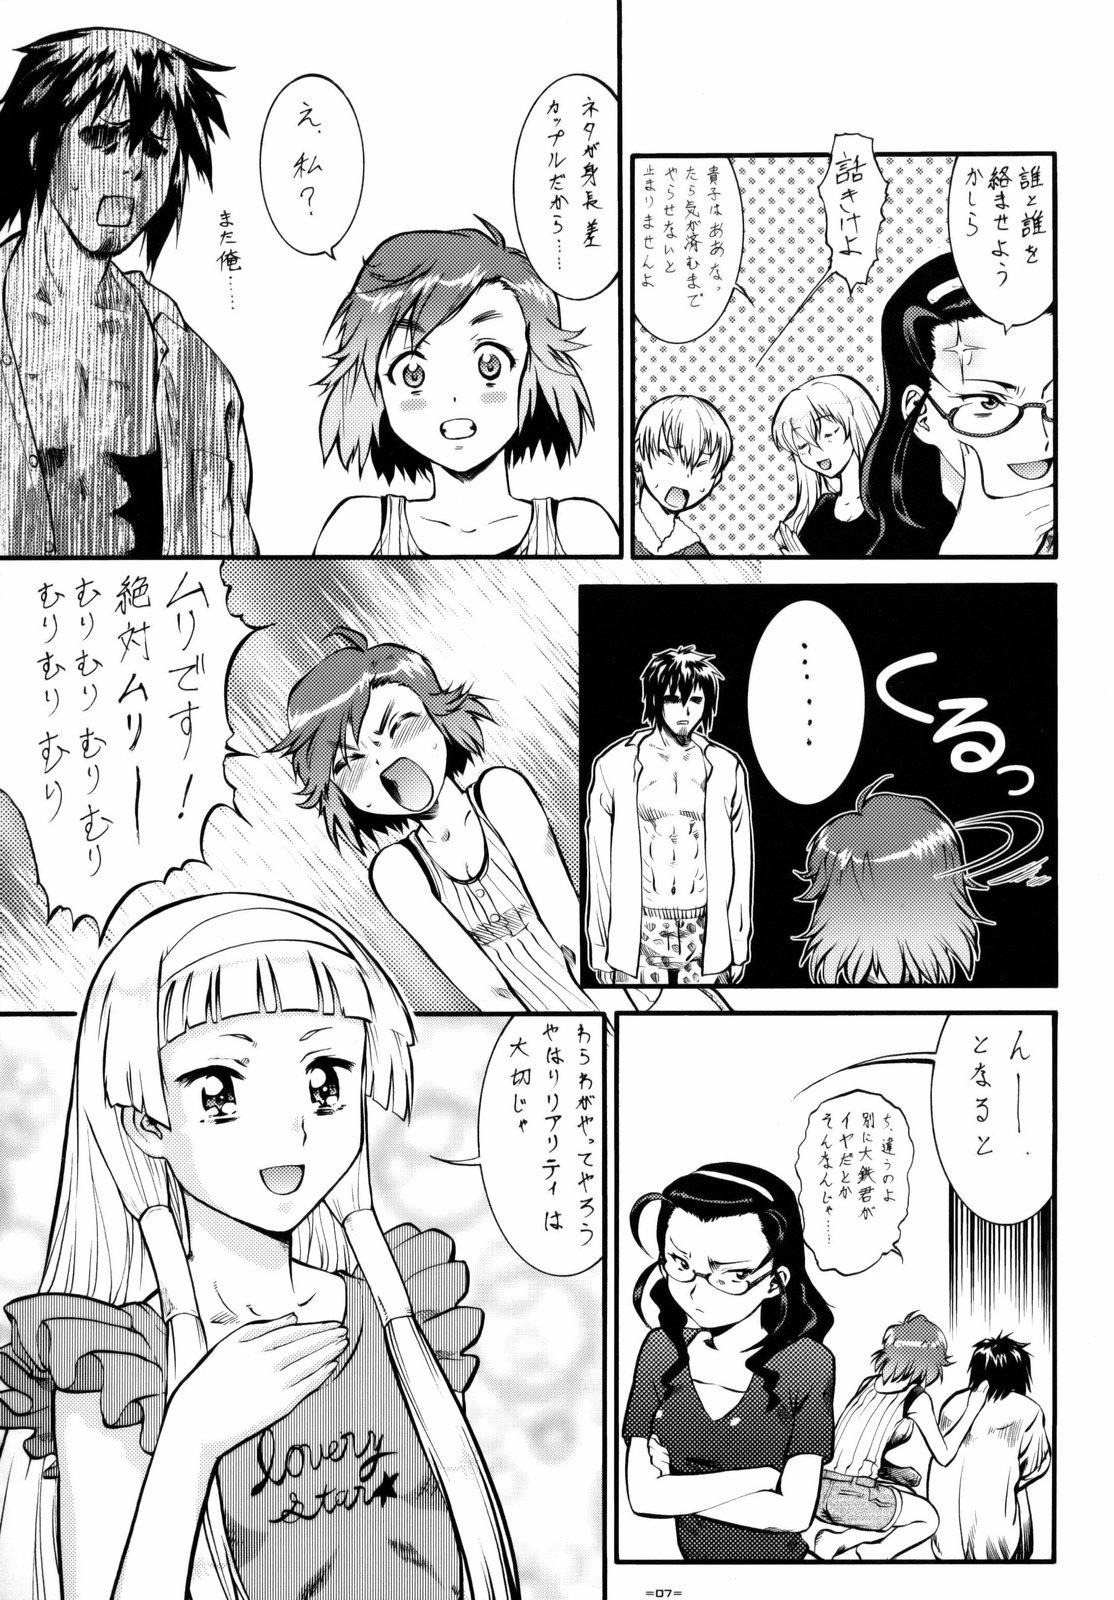 Shorts Kannani - Kannagi Anime - Page 6